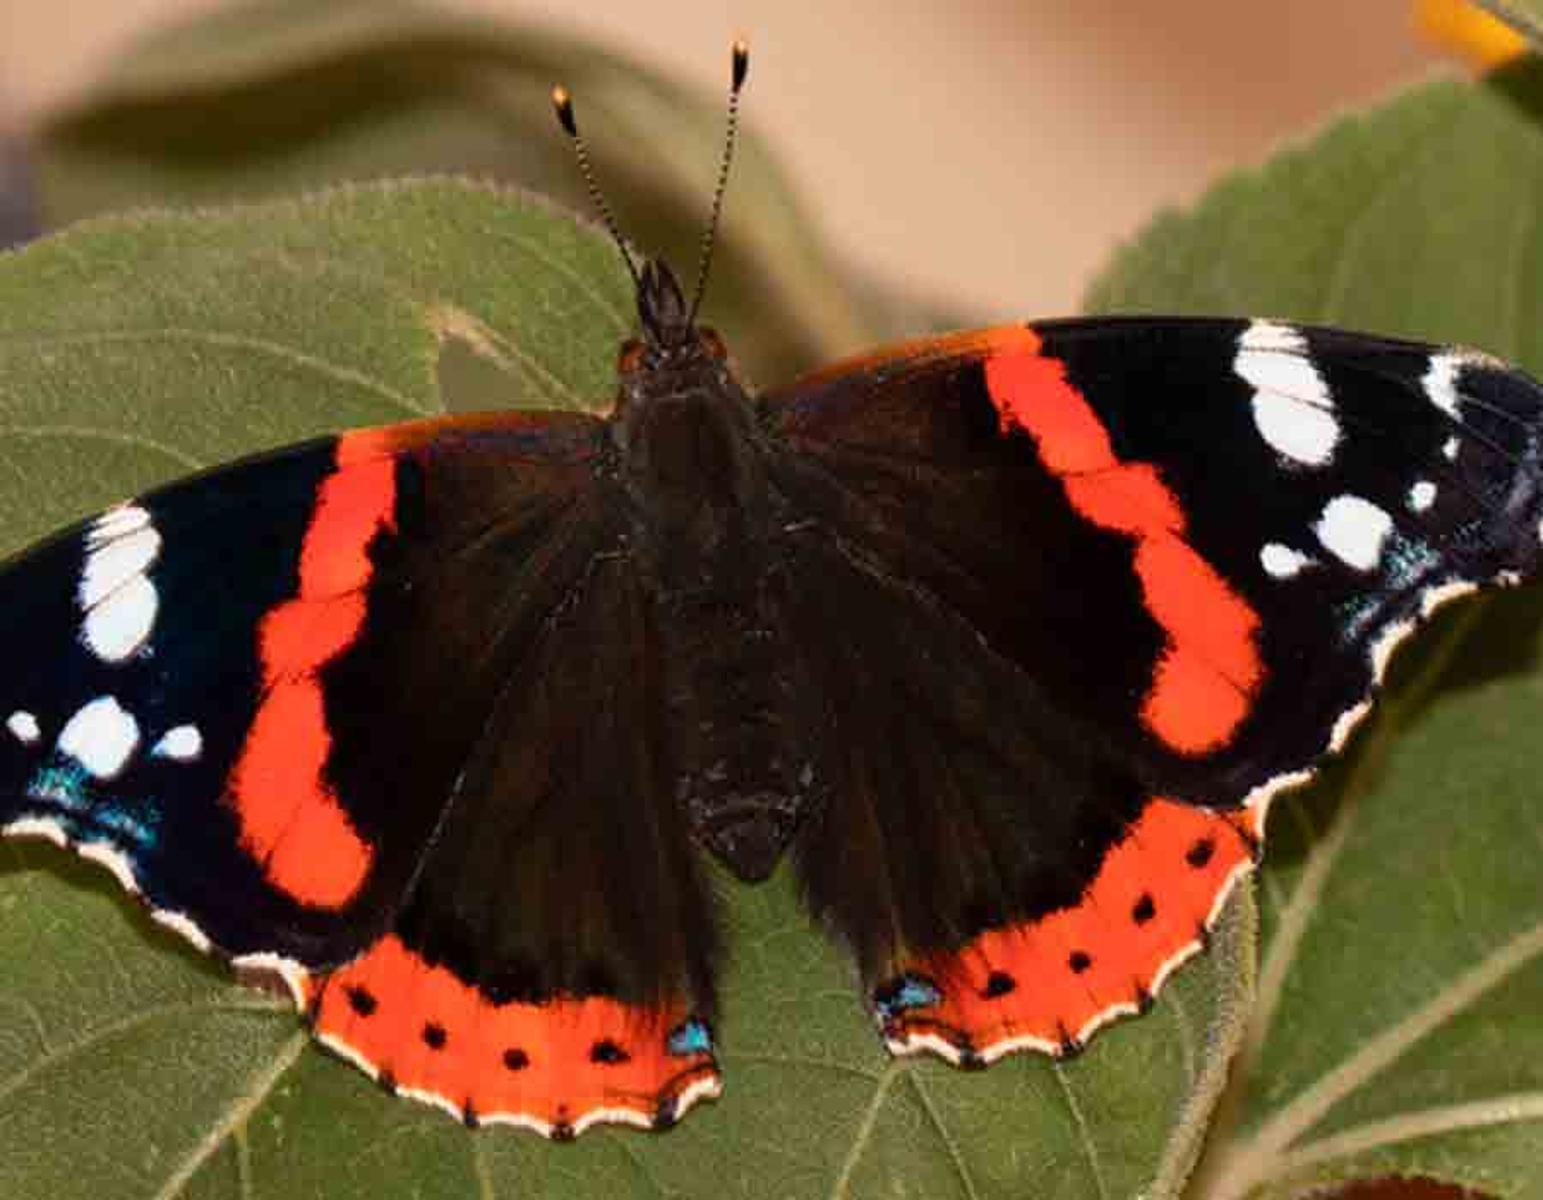 Fotografien exotischer Schmetterlinge Martin Gach, der regionale Spezialist f&uuml;r heimische Schmetterlinge trifft auf Regine Hakenbeck, die sich auf die Suche nach exotischen Faltern gemacht hat. Beide versuchen die Falter in ihrem Lebensraum abzulichten mit bew...